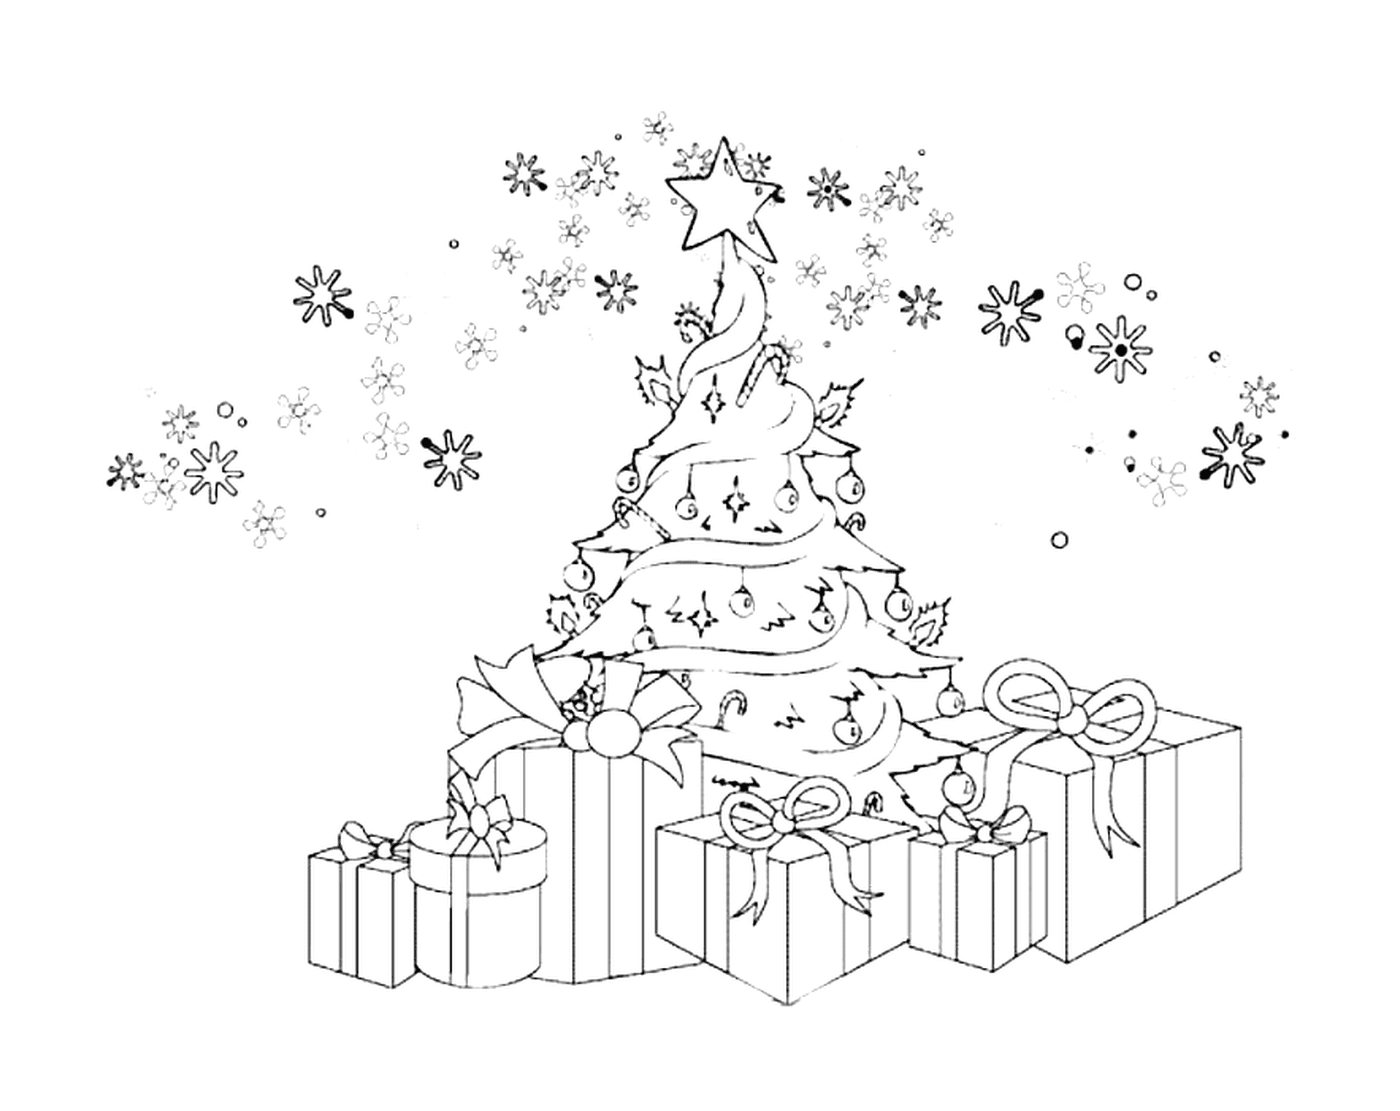  Weihnachtsbaum mit Geschenken und Schneeflocken 